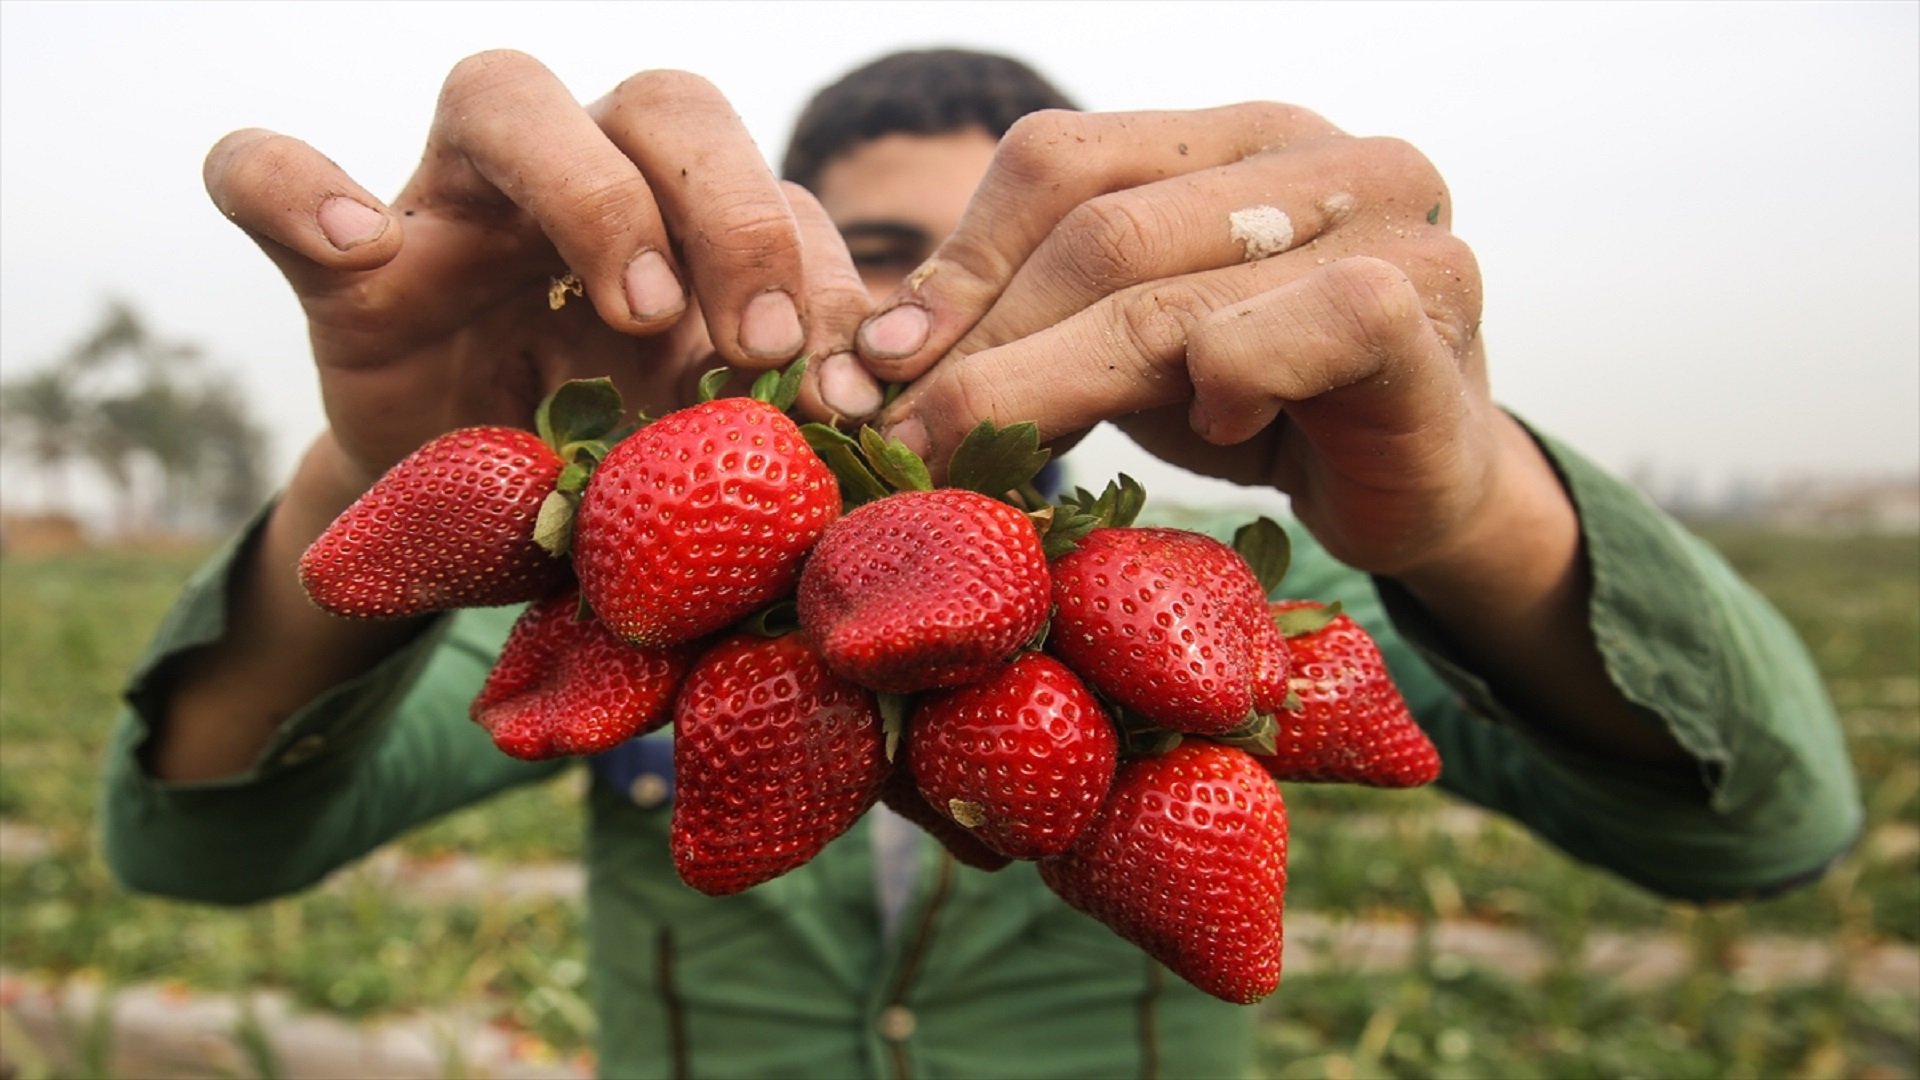 مليون طن صادرات مصر الزراعية خلال يناير وفبراير 2021